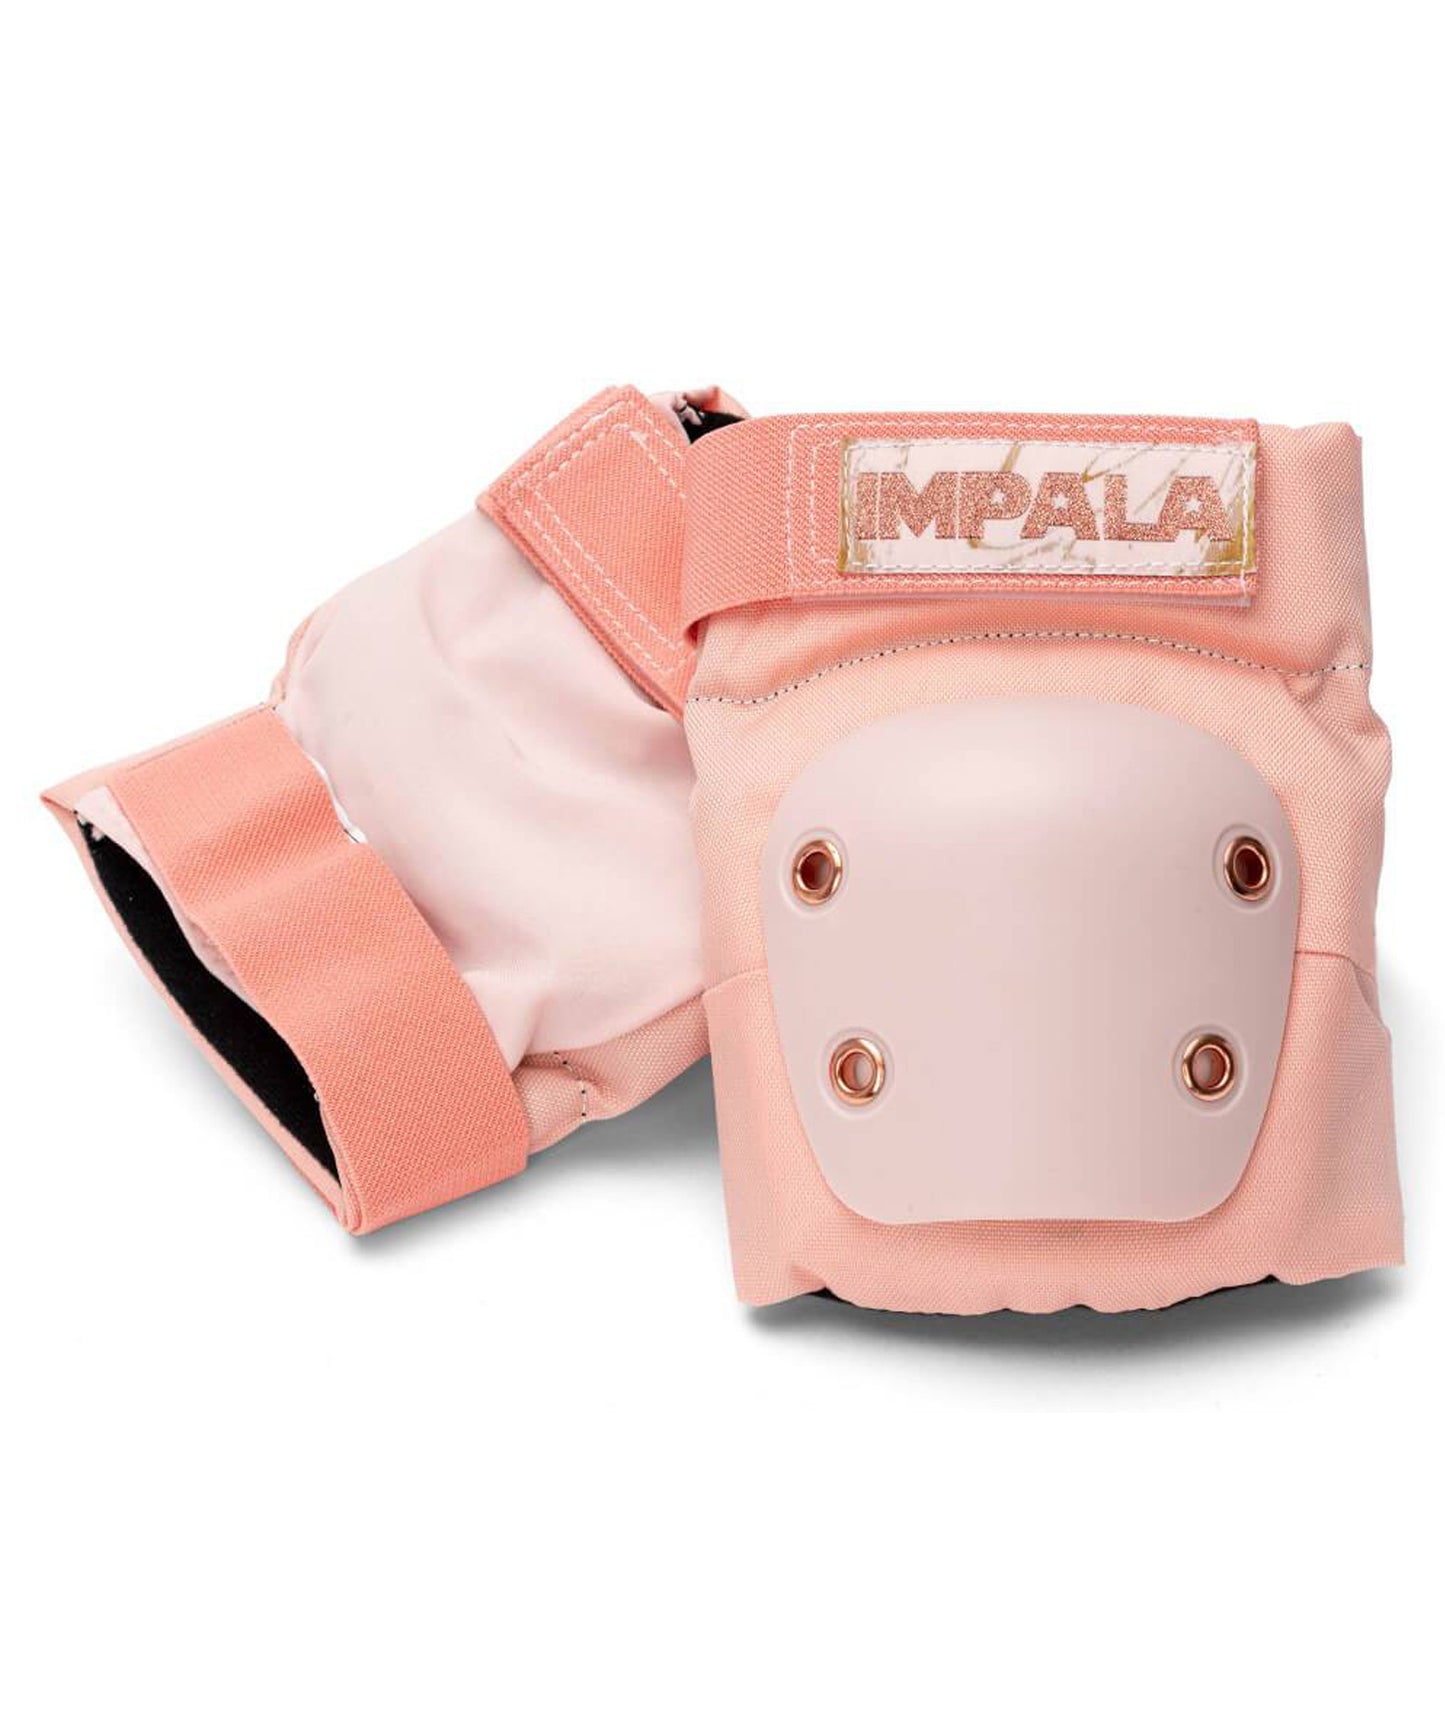 mpala-set de protecciones-color rosa teja-valido para-para skate-patín en línea.-para rodillas y codos